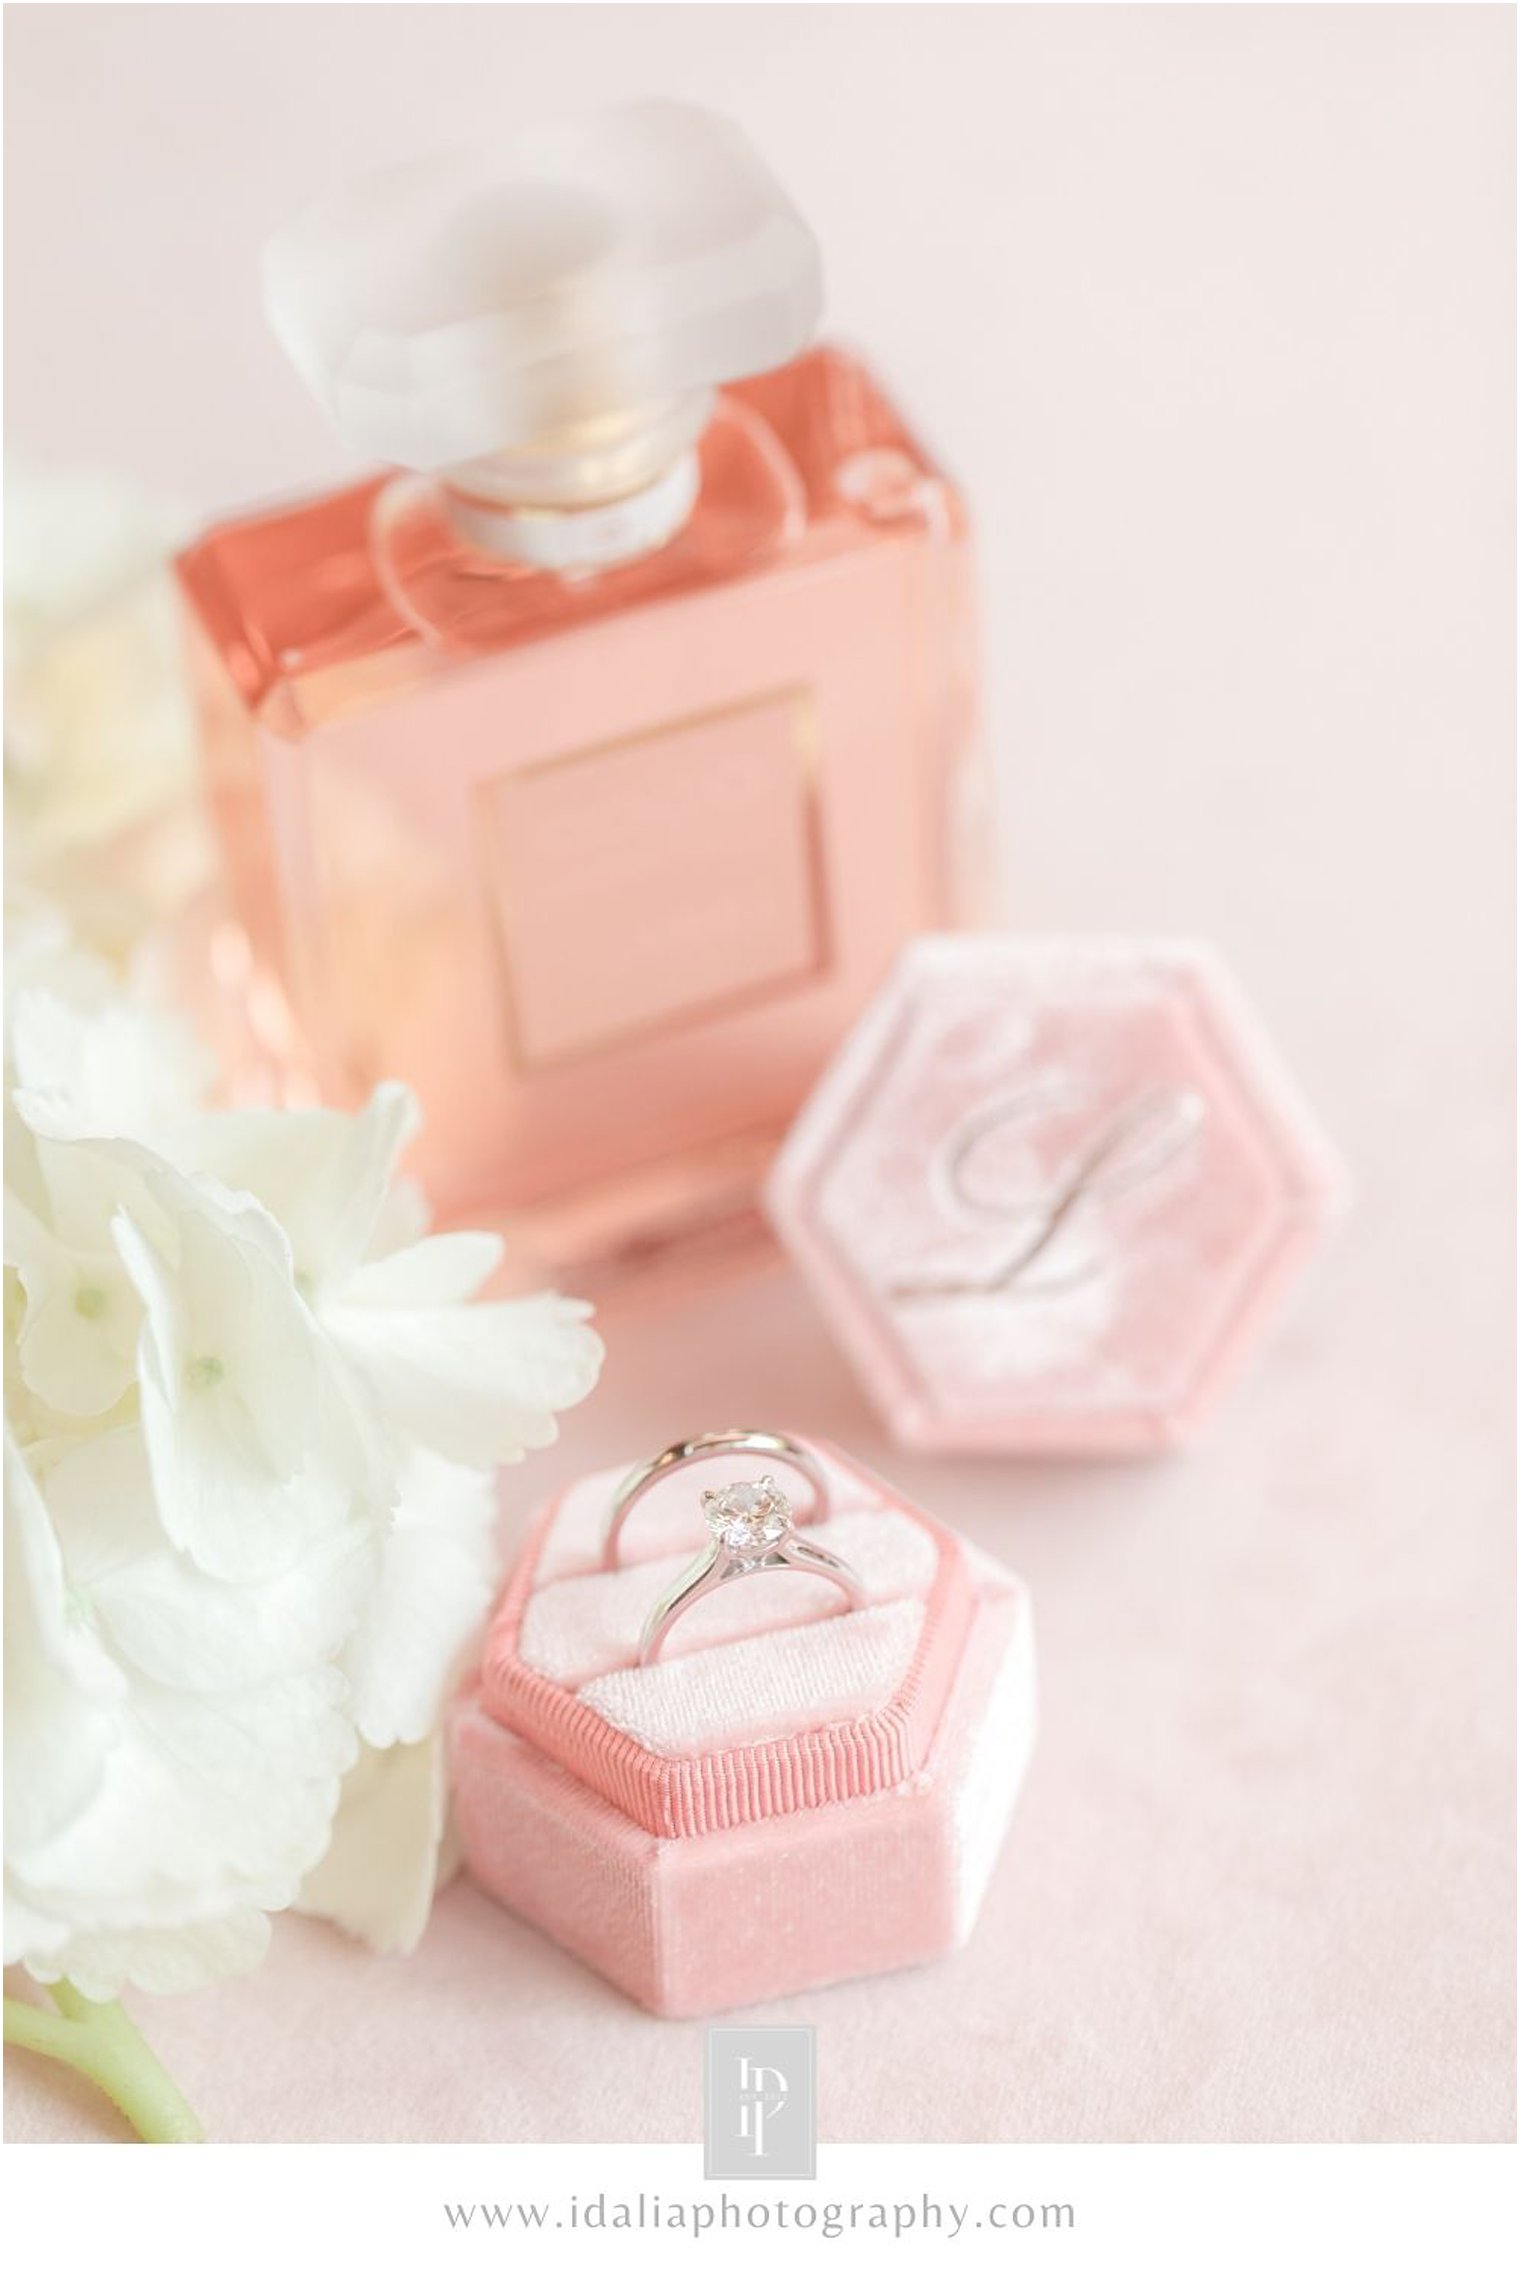 Engagement ring in pink velvet box